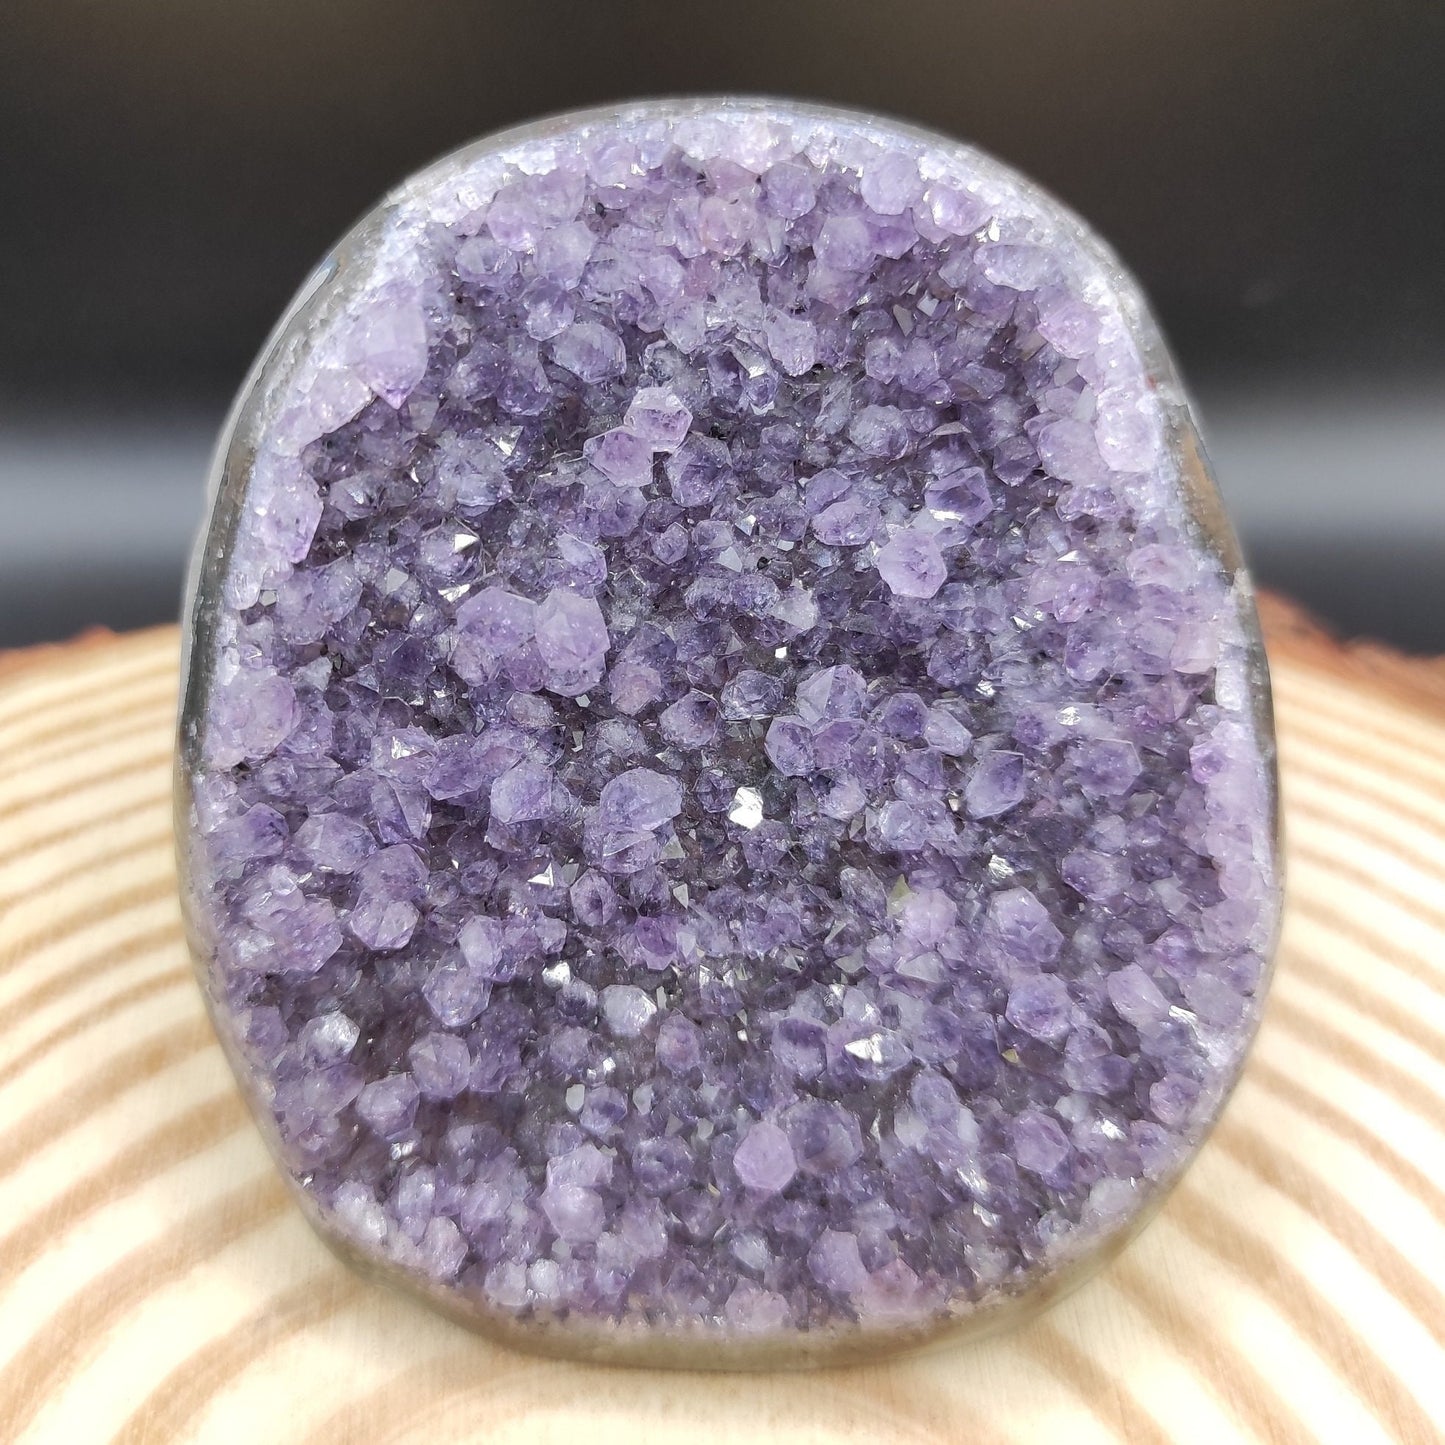 391g Amethyst Geode Cluster Purple Amethyst from South Brazil Amethyst Gemstone Raw Amethyst Rough Amethyst Desk Crystal Natural Crystals